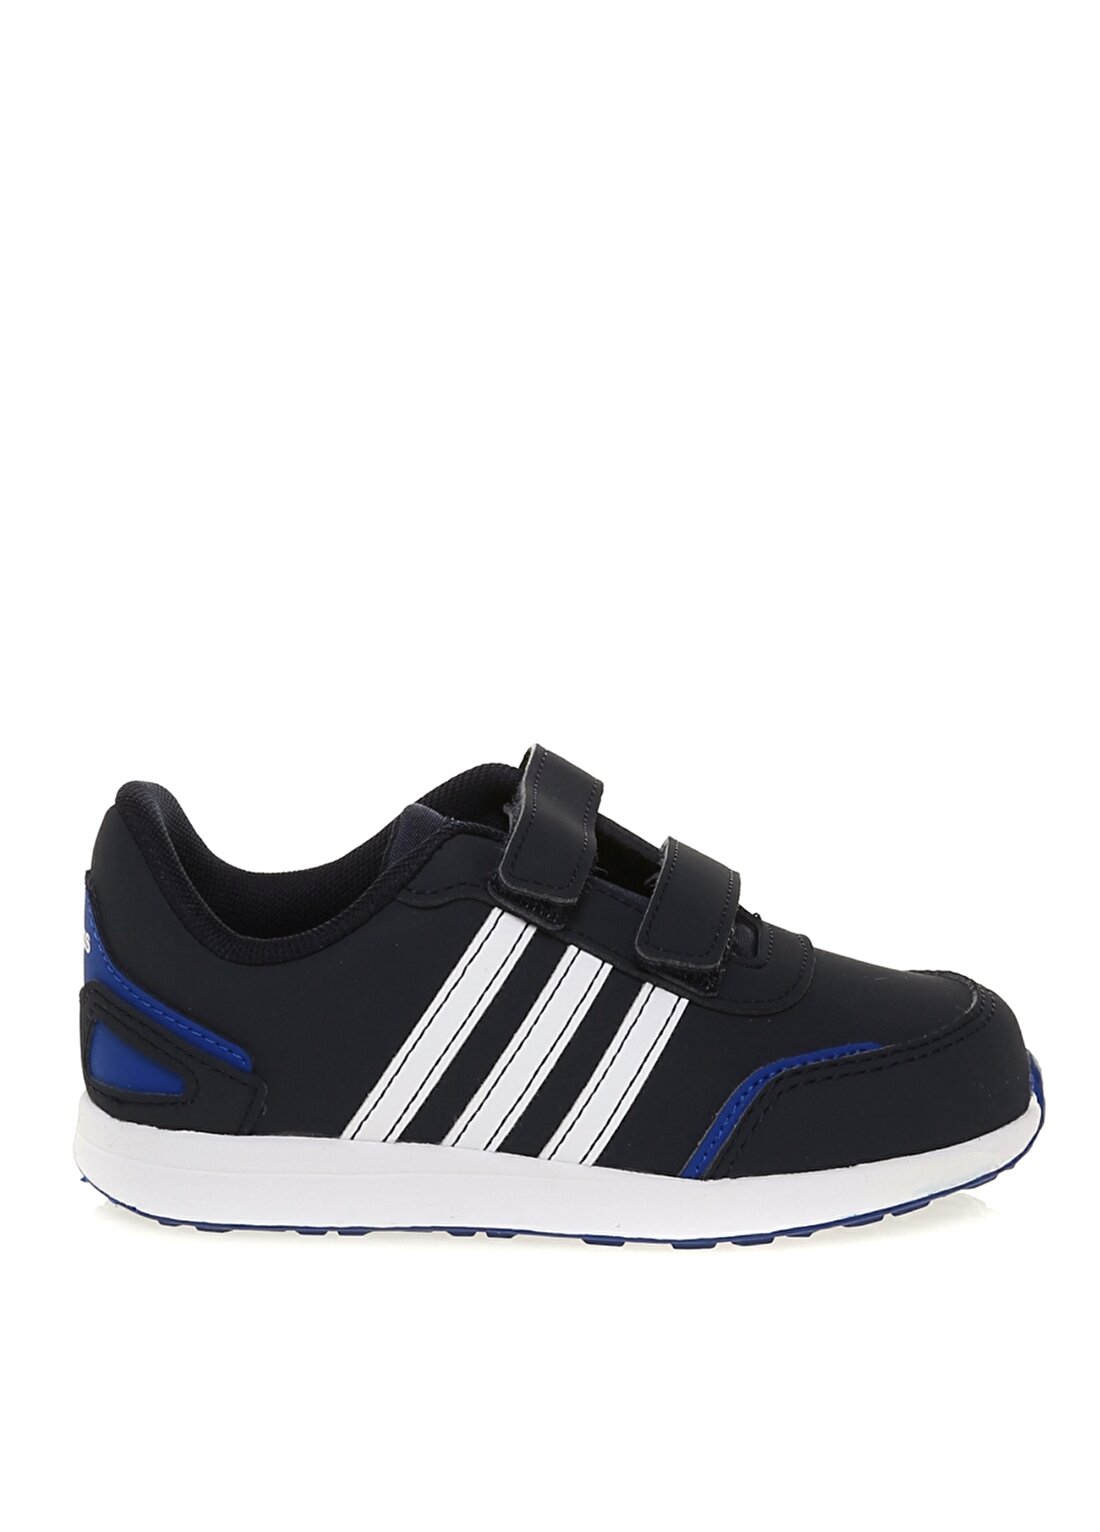 Adidas FW6663 VS SWITCH 3 I Siyah - Beyaz - Mavi Yürüyüş Ayakkabısı